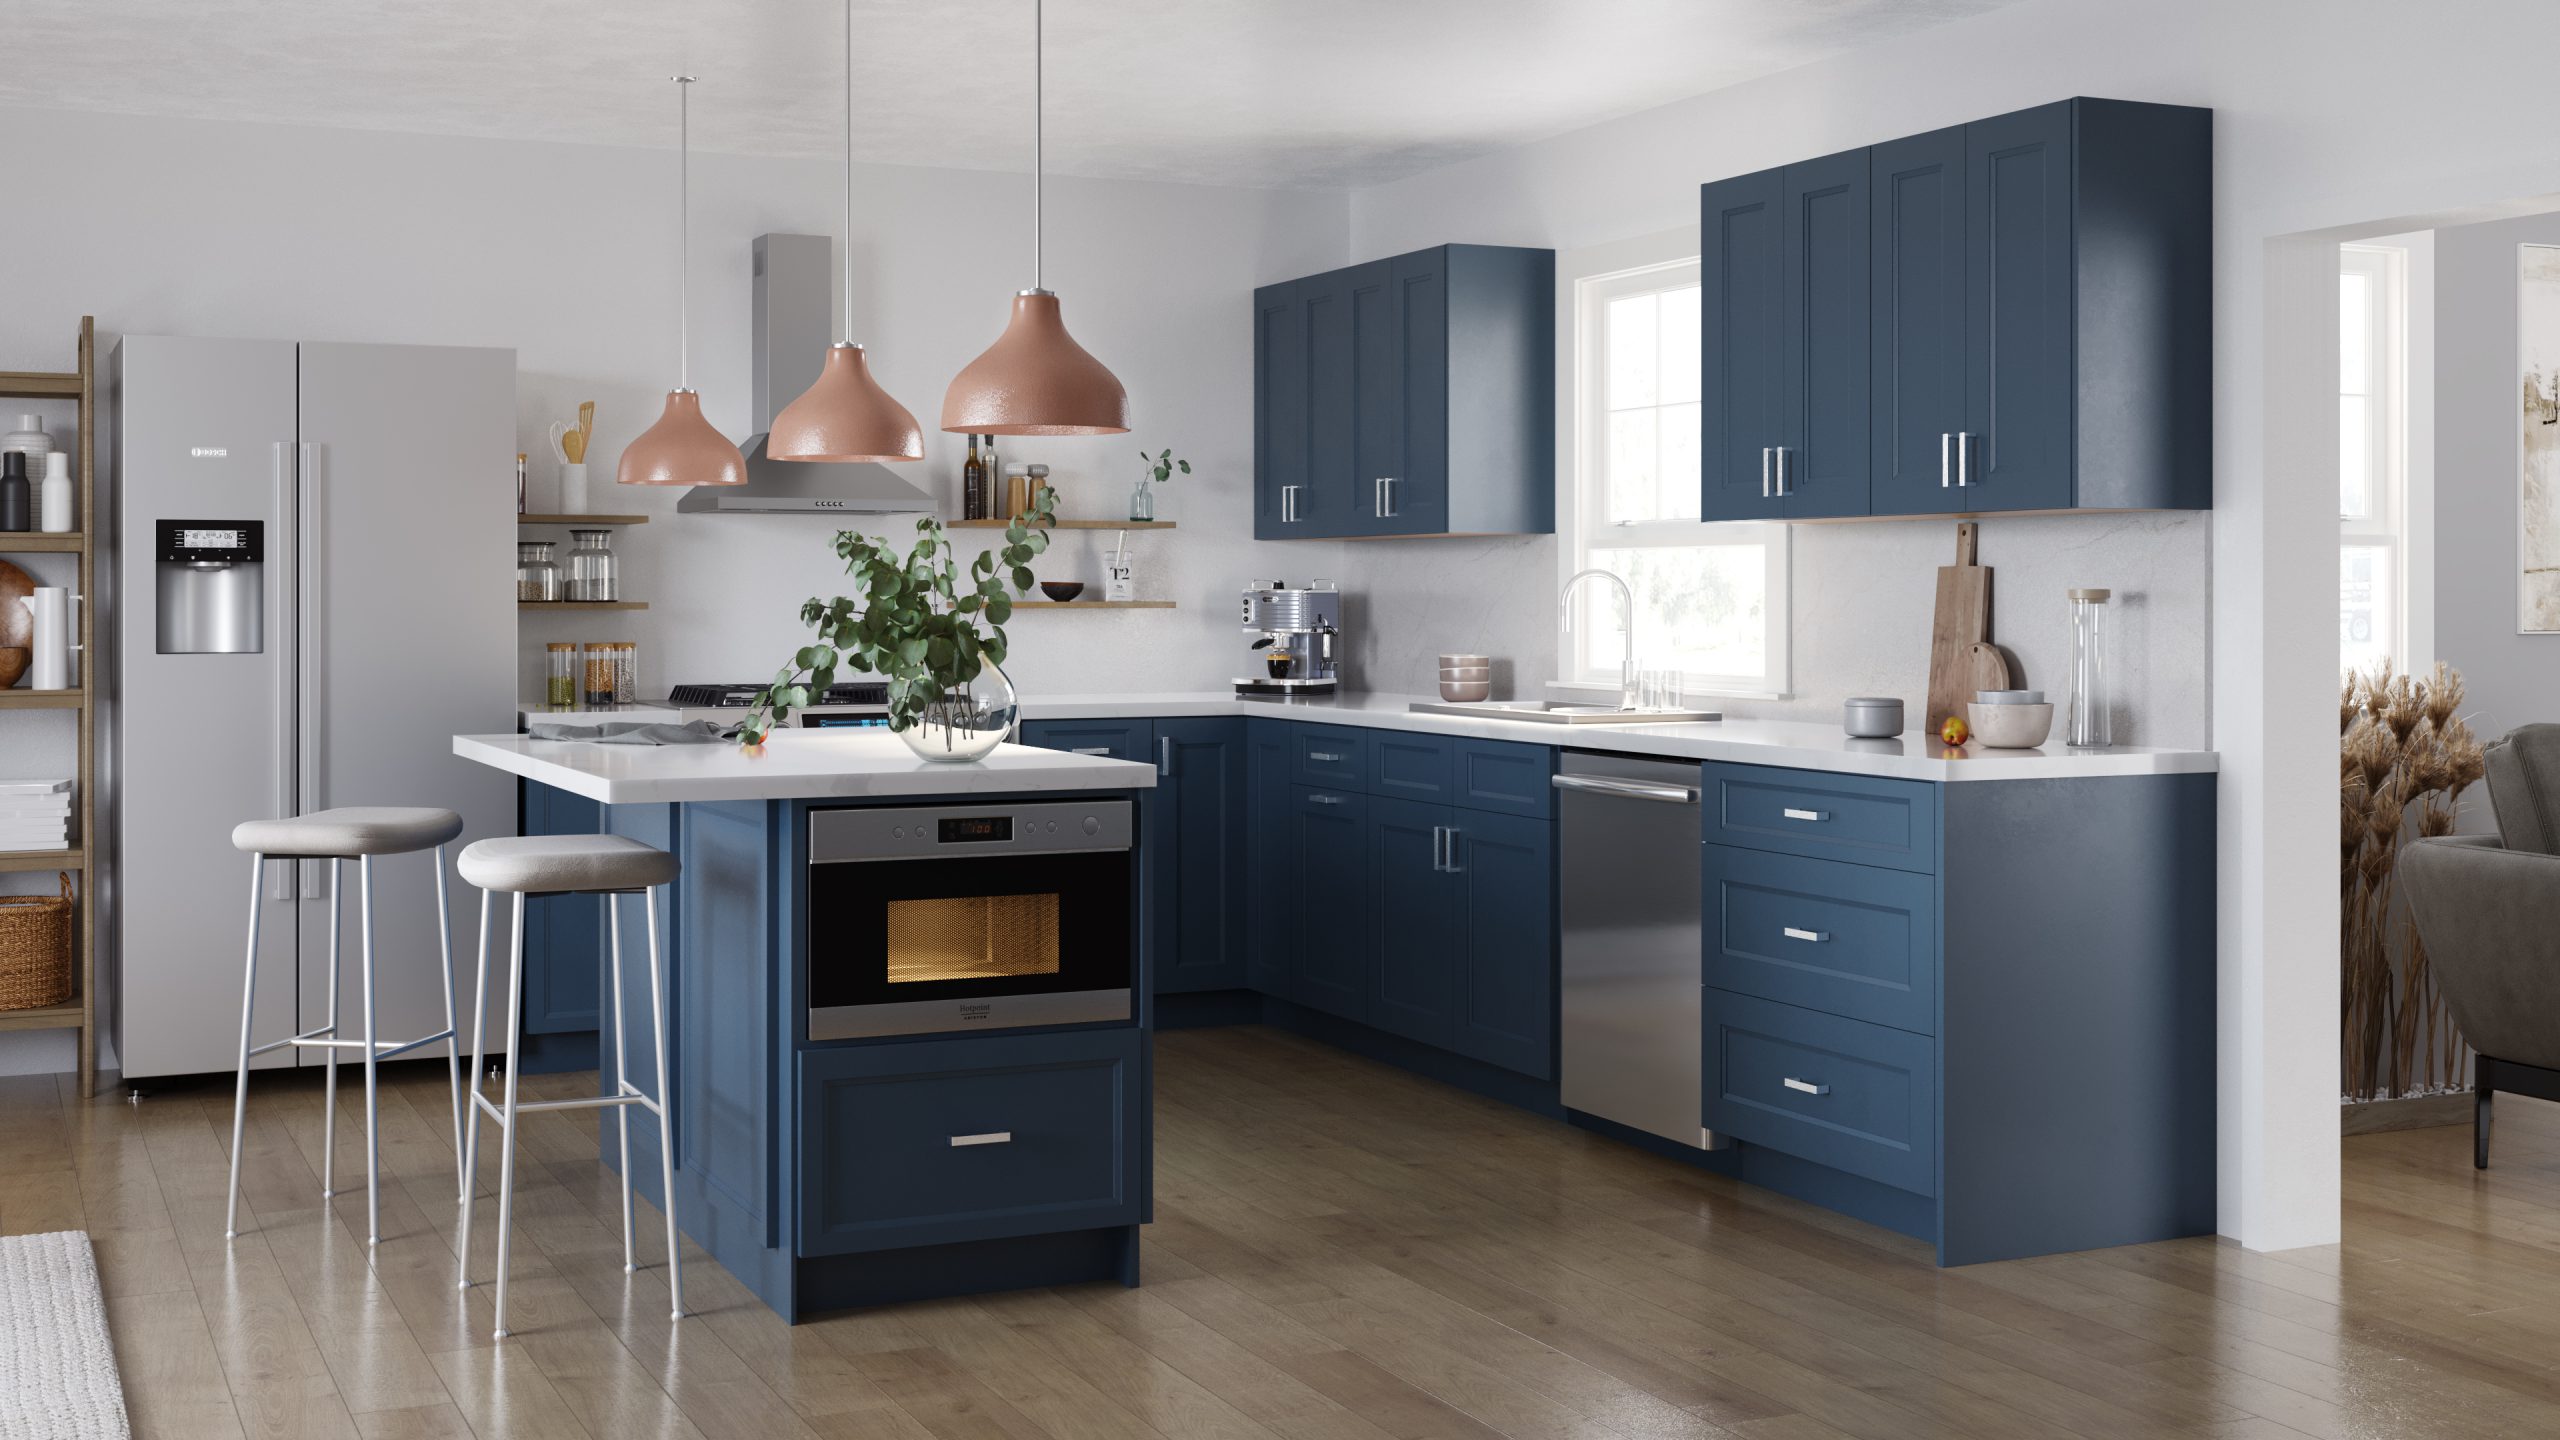 Midnight Blue | Todays Designer Kitchens